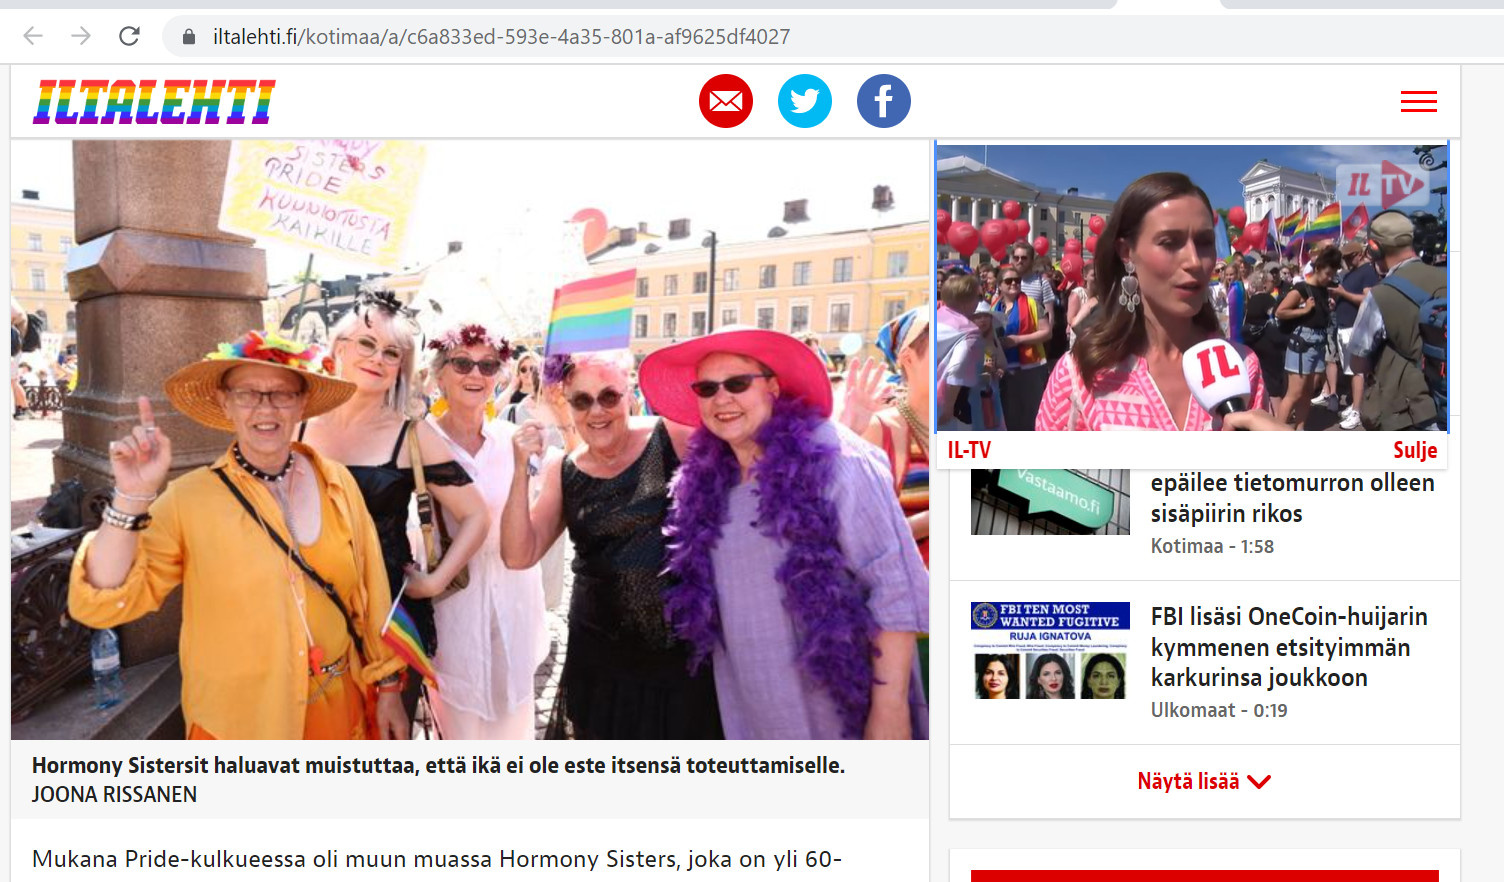 Гей-парад в Хельсинки в Финляндии 2 июля 2022г., фото - 2 июля 2022 -  Фонтанка.Ру